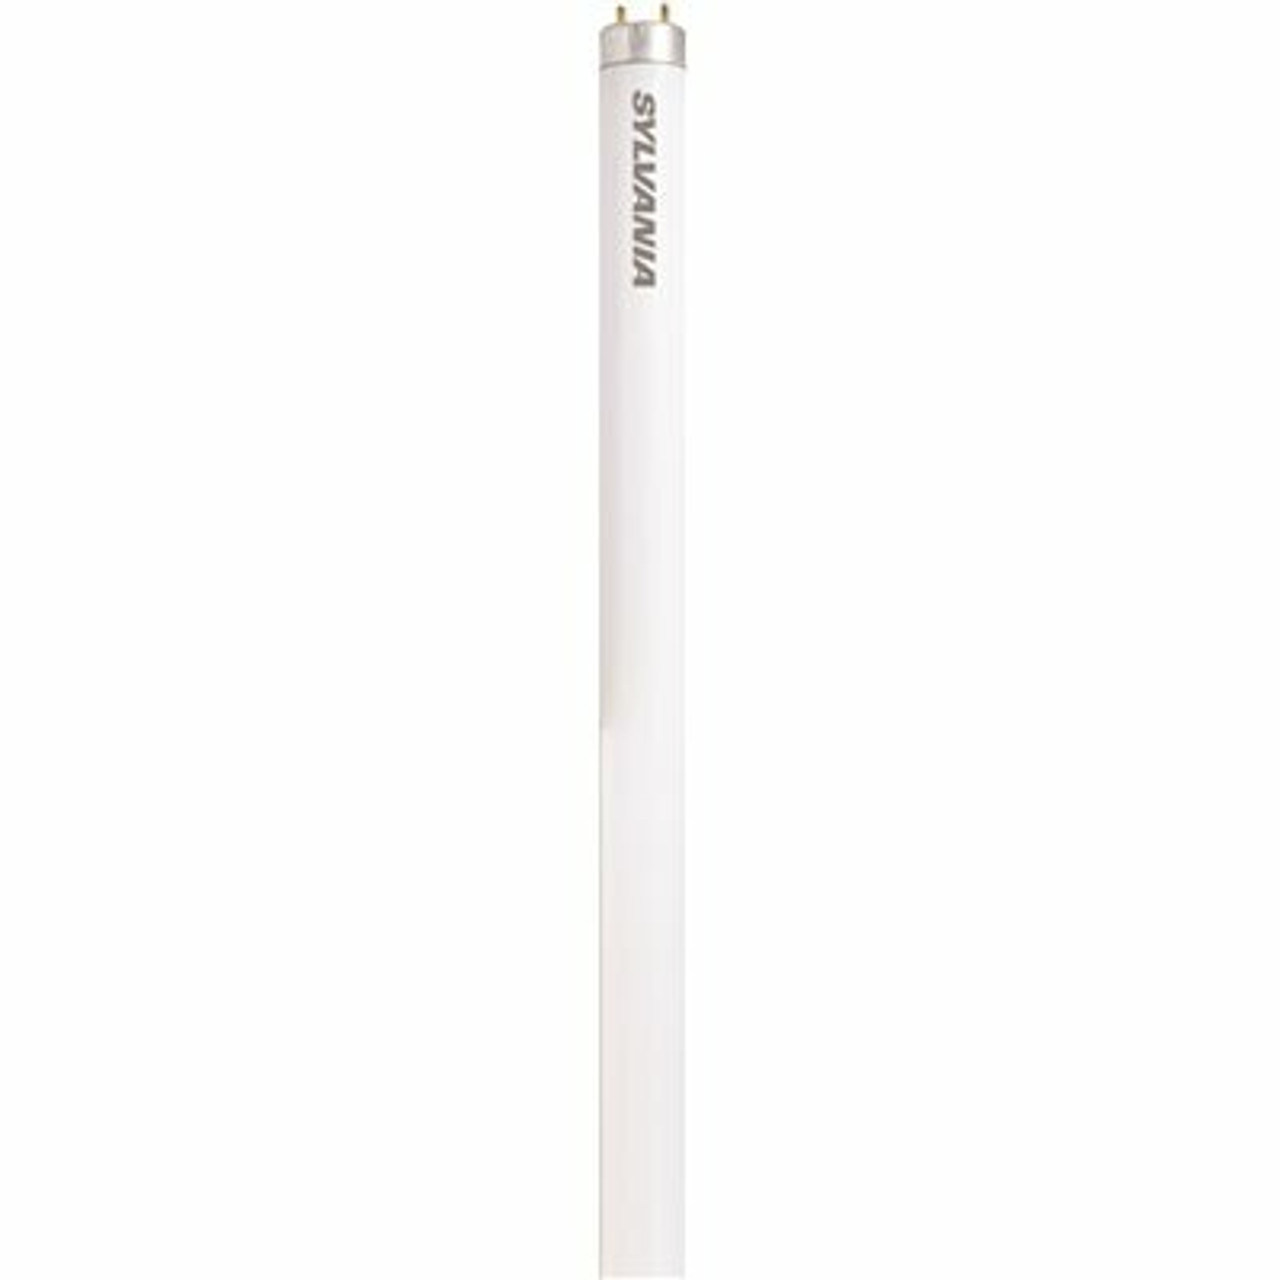 Sylvania 20 In. 15-Watt Linear T8 Fluorescent Tube Light Bulb, Soft White (1-Bulb)